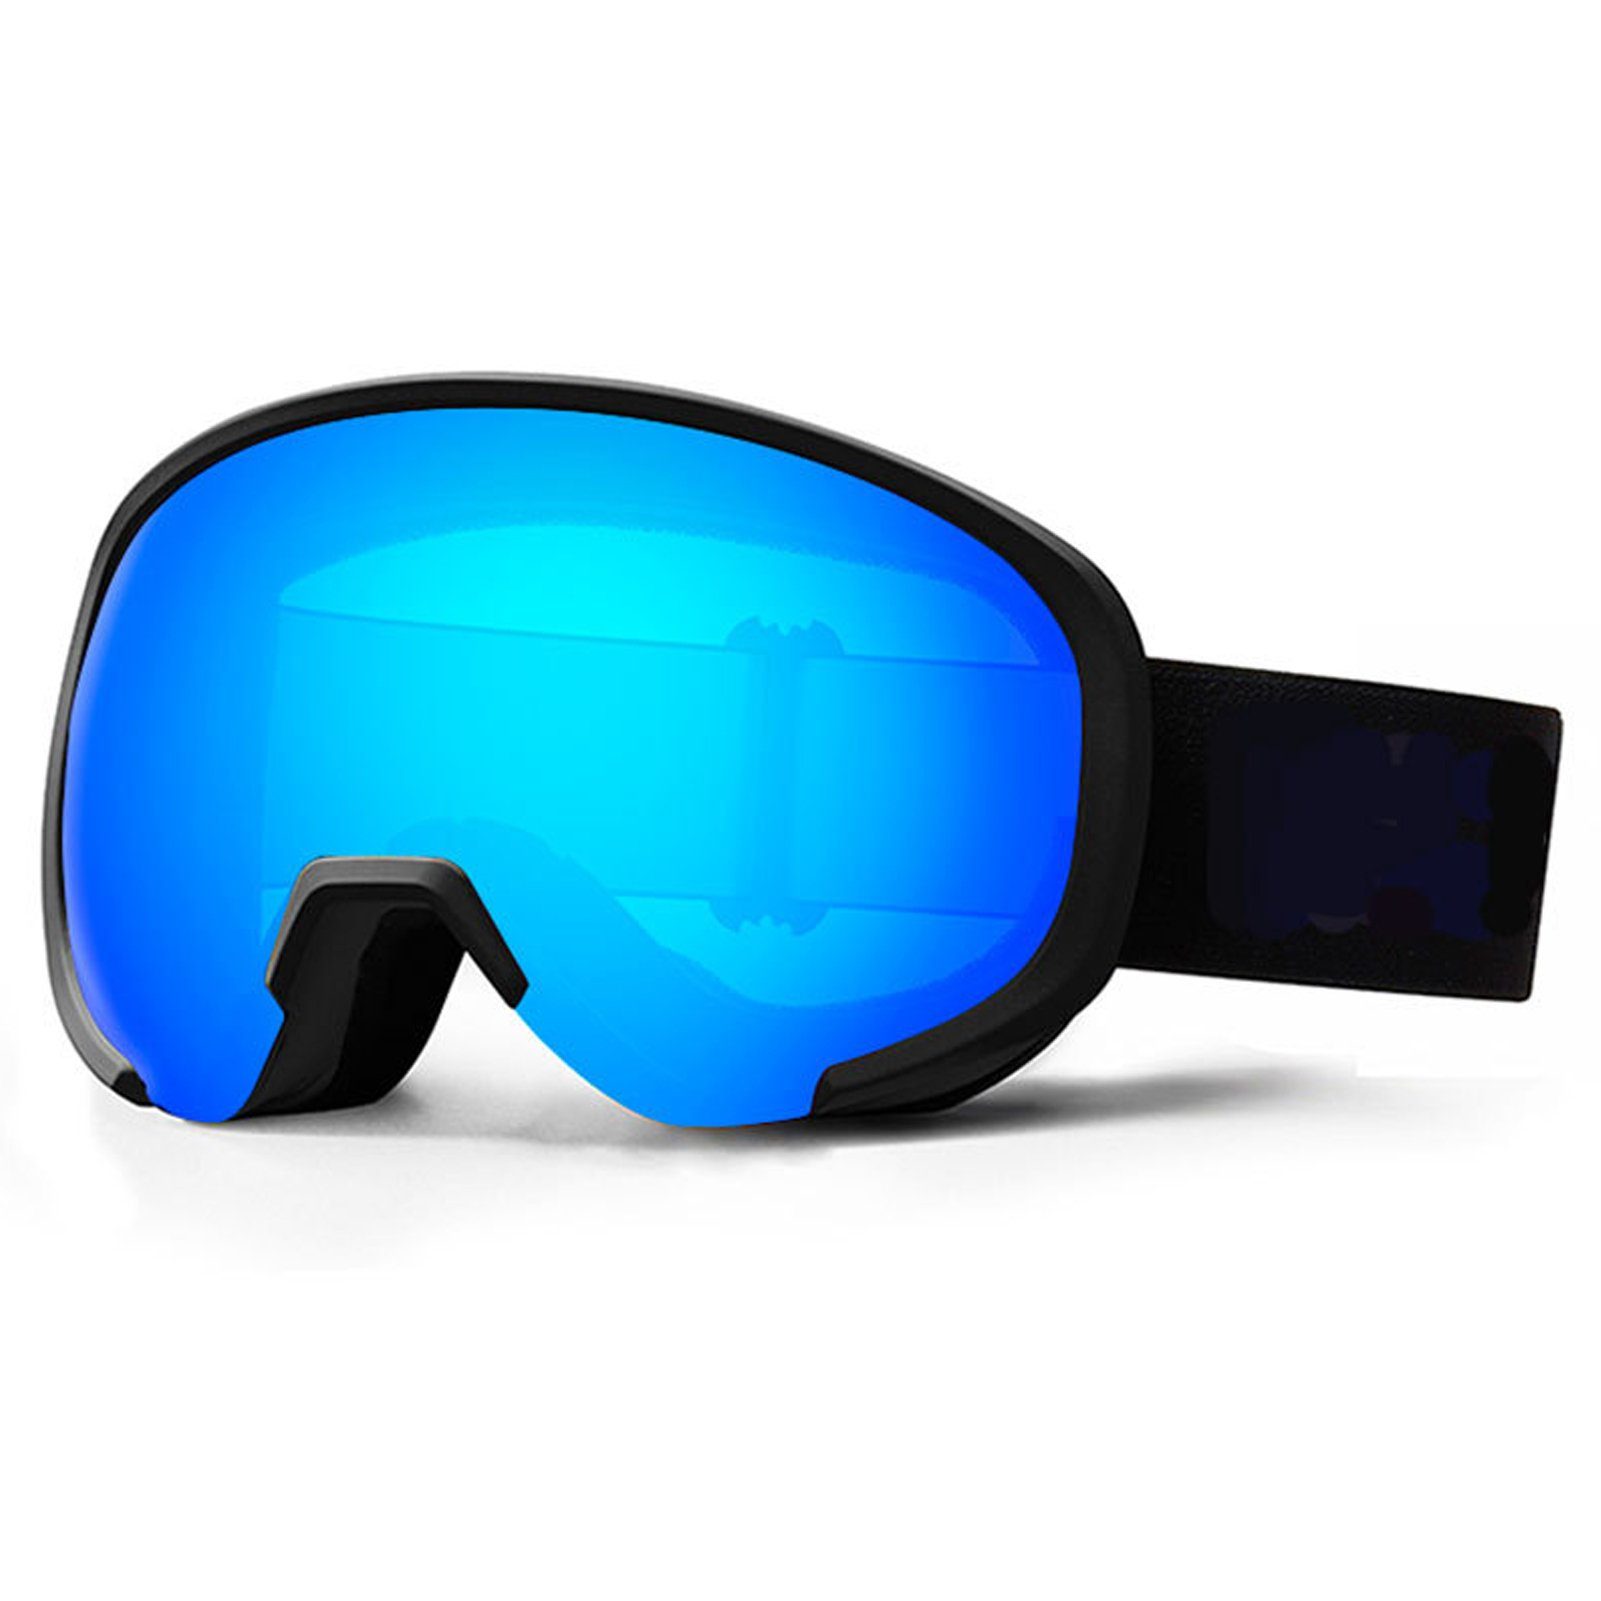 Skibrille Rutschfeste Blusmart Mit Breiter Sicht, 1 Ski-Snowboard-Brille